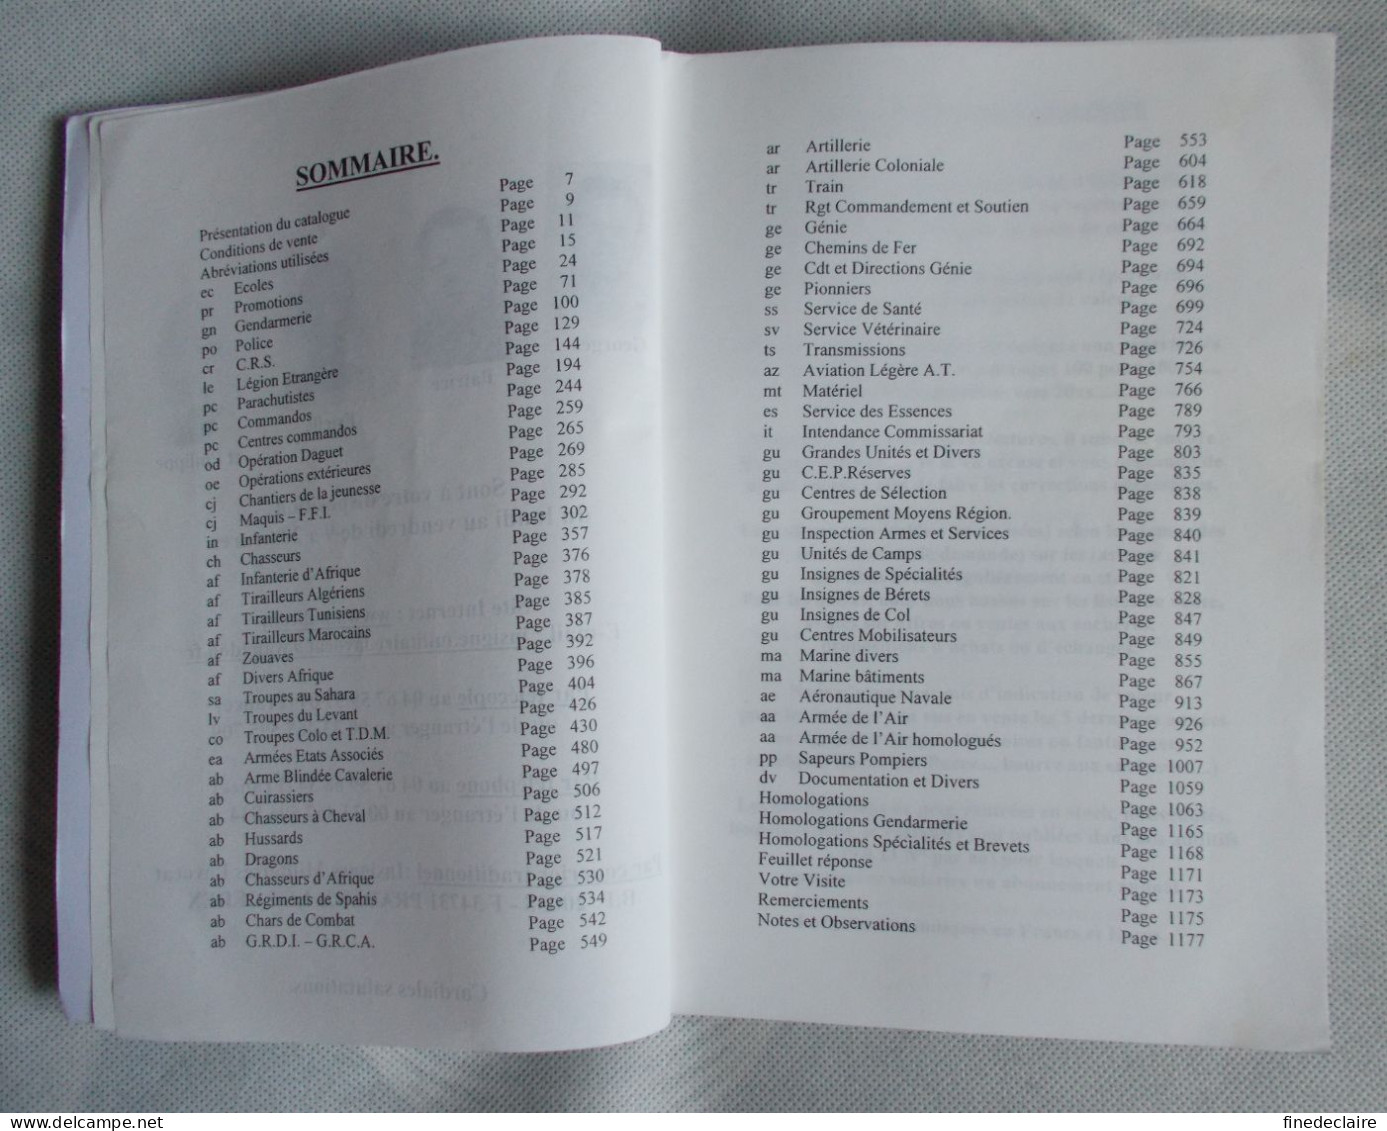 Catalogue - Insignes Militaires Lavocat 2003 - 1184 Pages - Frankrijk